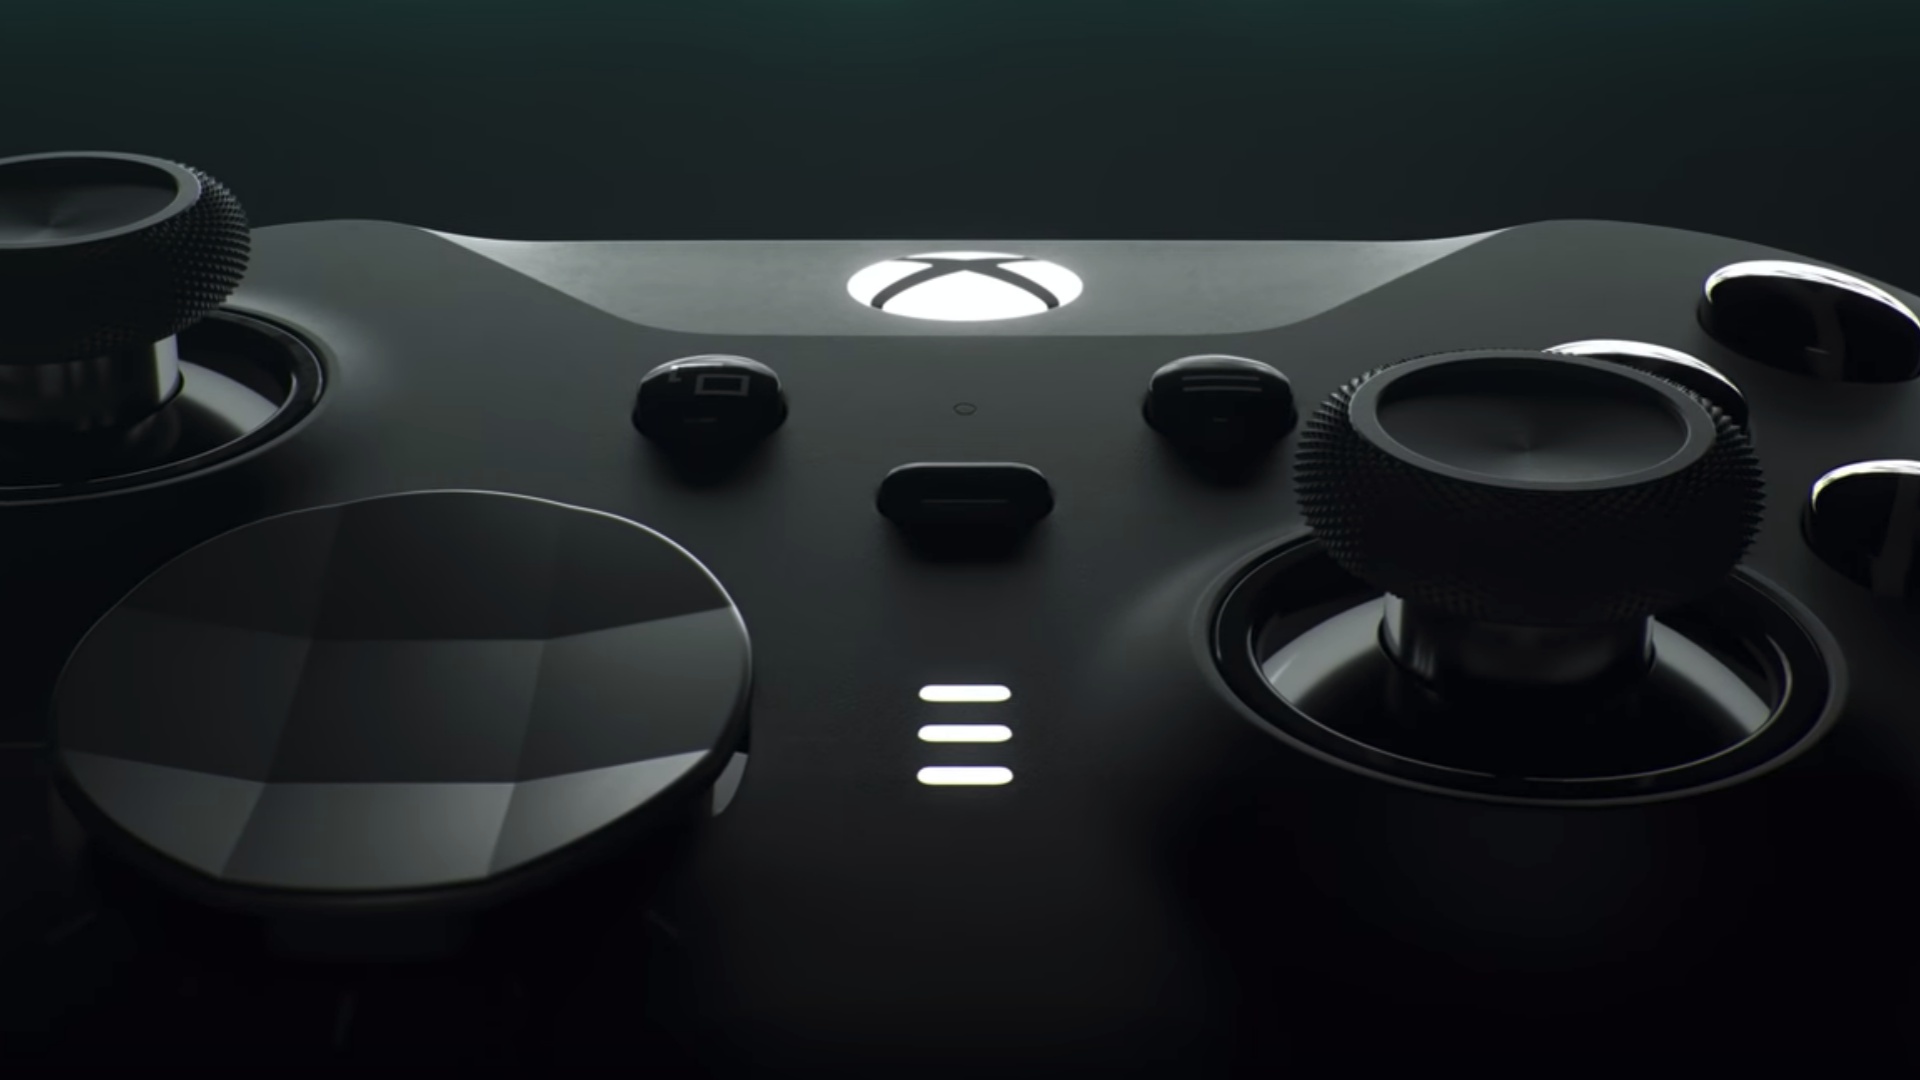 カスタム Xbox Elite コントローラー シリーズ Xbox One、Xbox シリーズ X、Xbox シリーズSと互換性があります。すべてのオリジナルアクセサリー＿並行輸入品